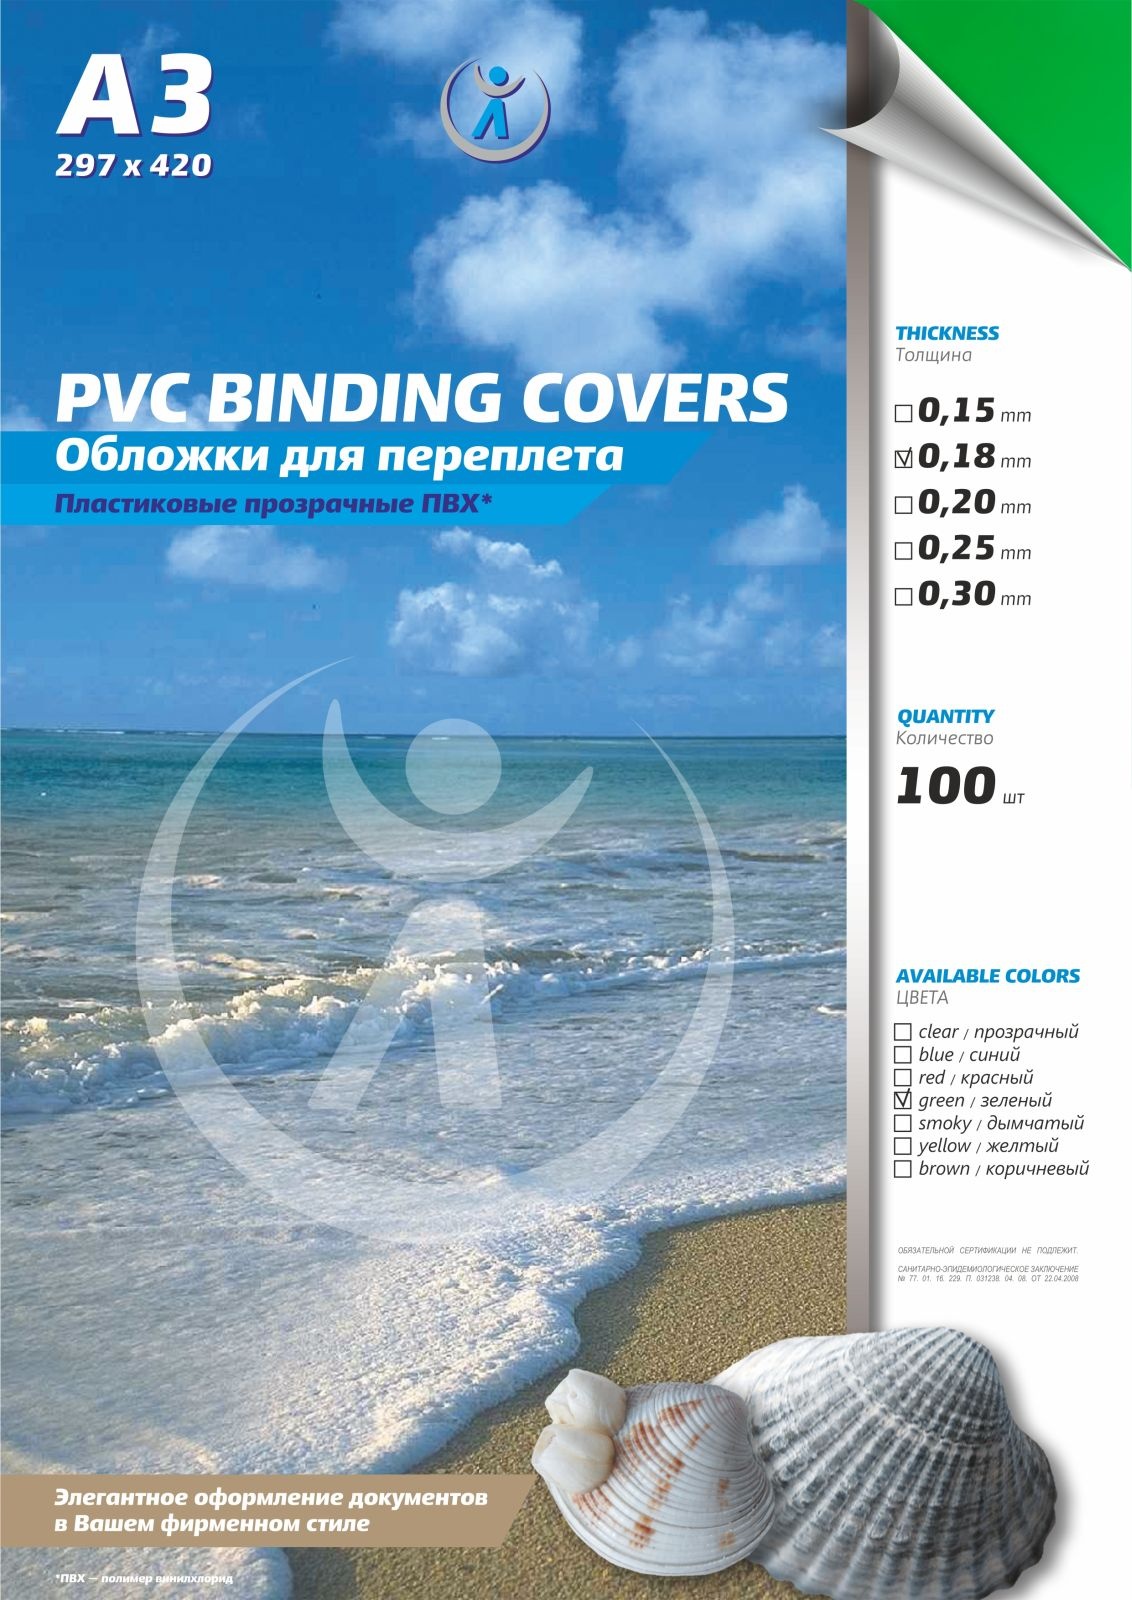 Обложки для переплета РеалИСТ 4403, ПВХ прозрачные, 0.18 мм, А3, зеленые, 100 штук